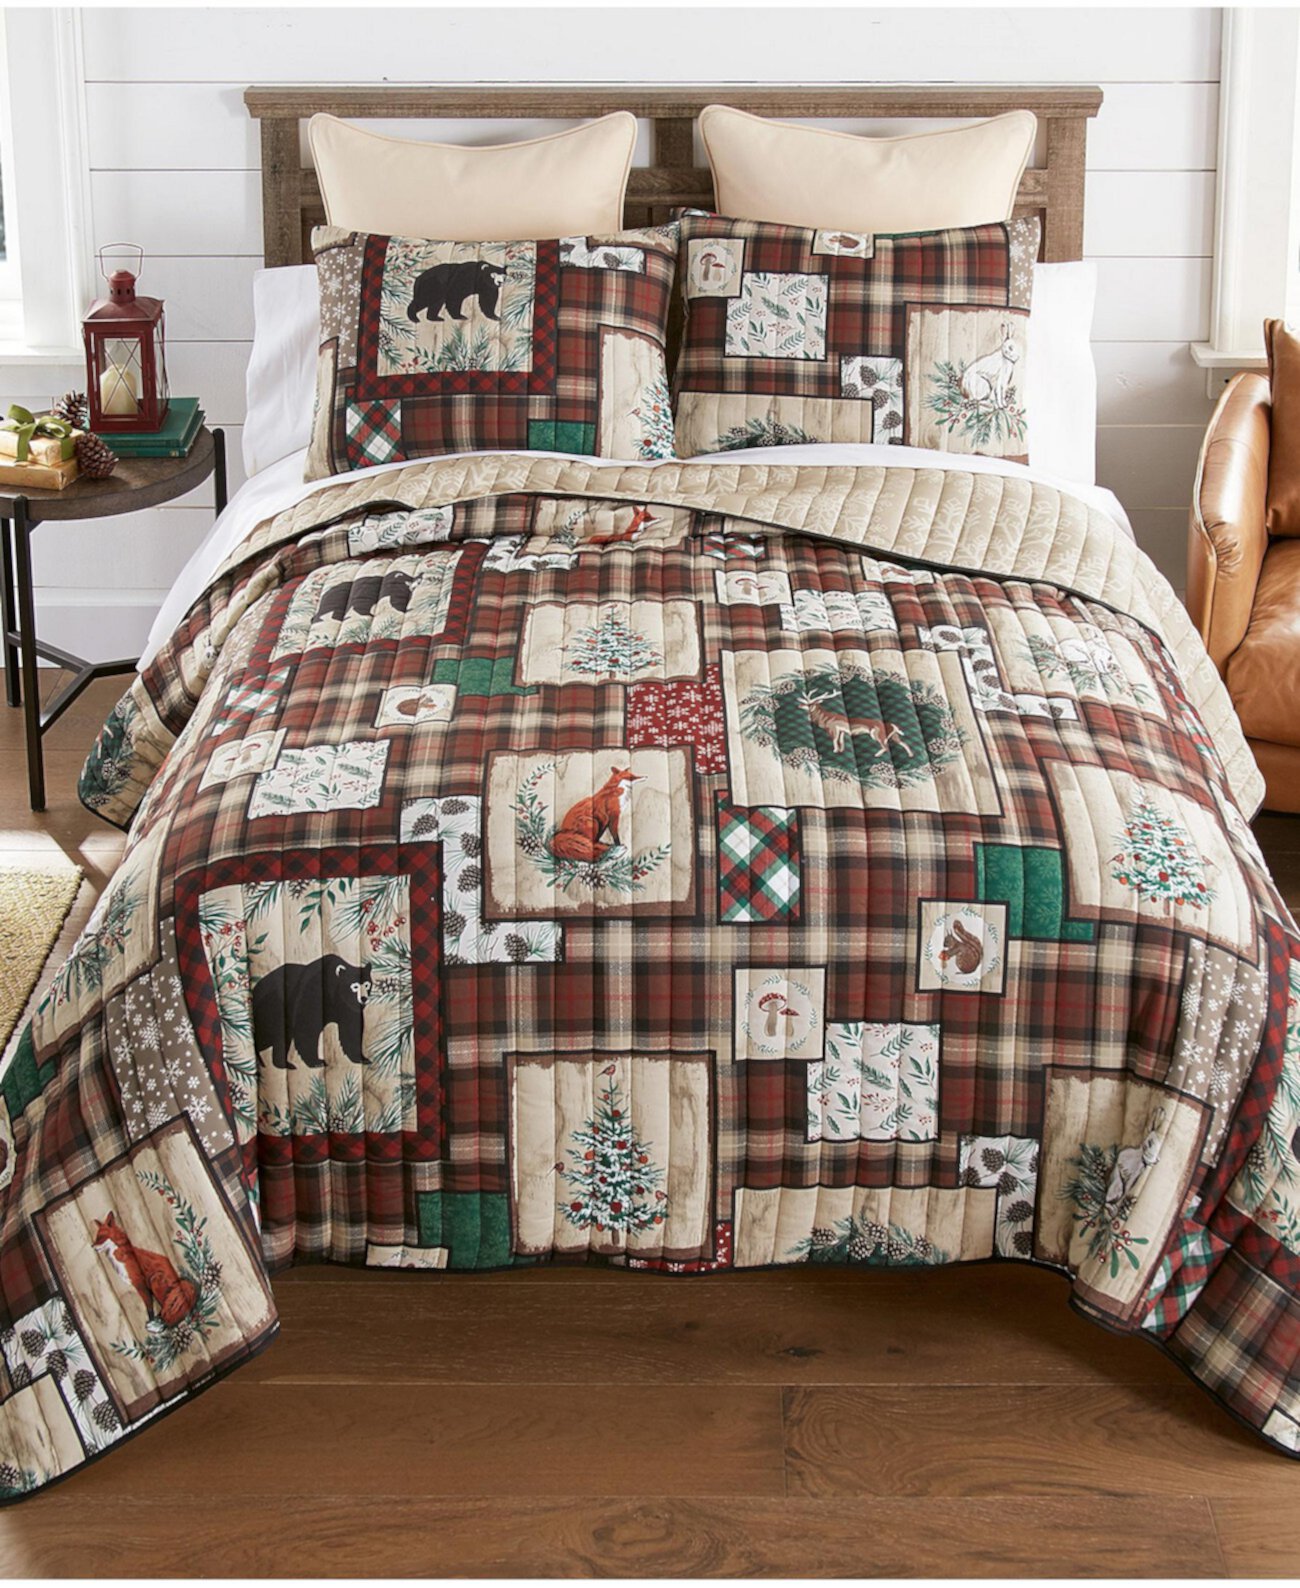 Комплект двусторонних одеял Woodland Holiday из 3 предметов, размер King Donna Sharp